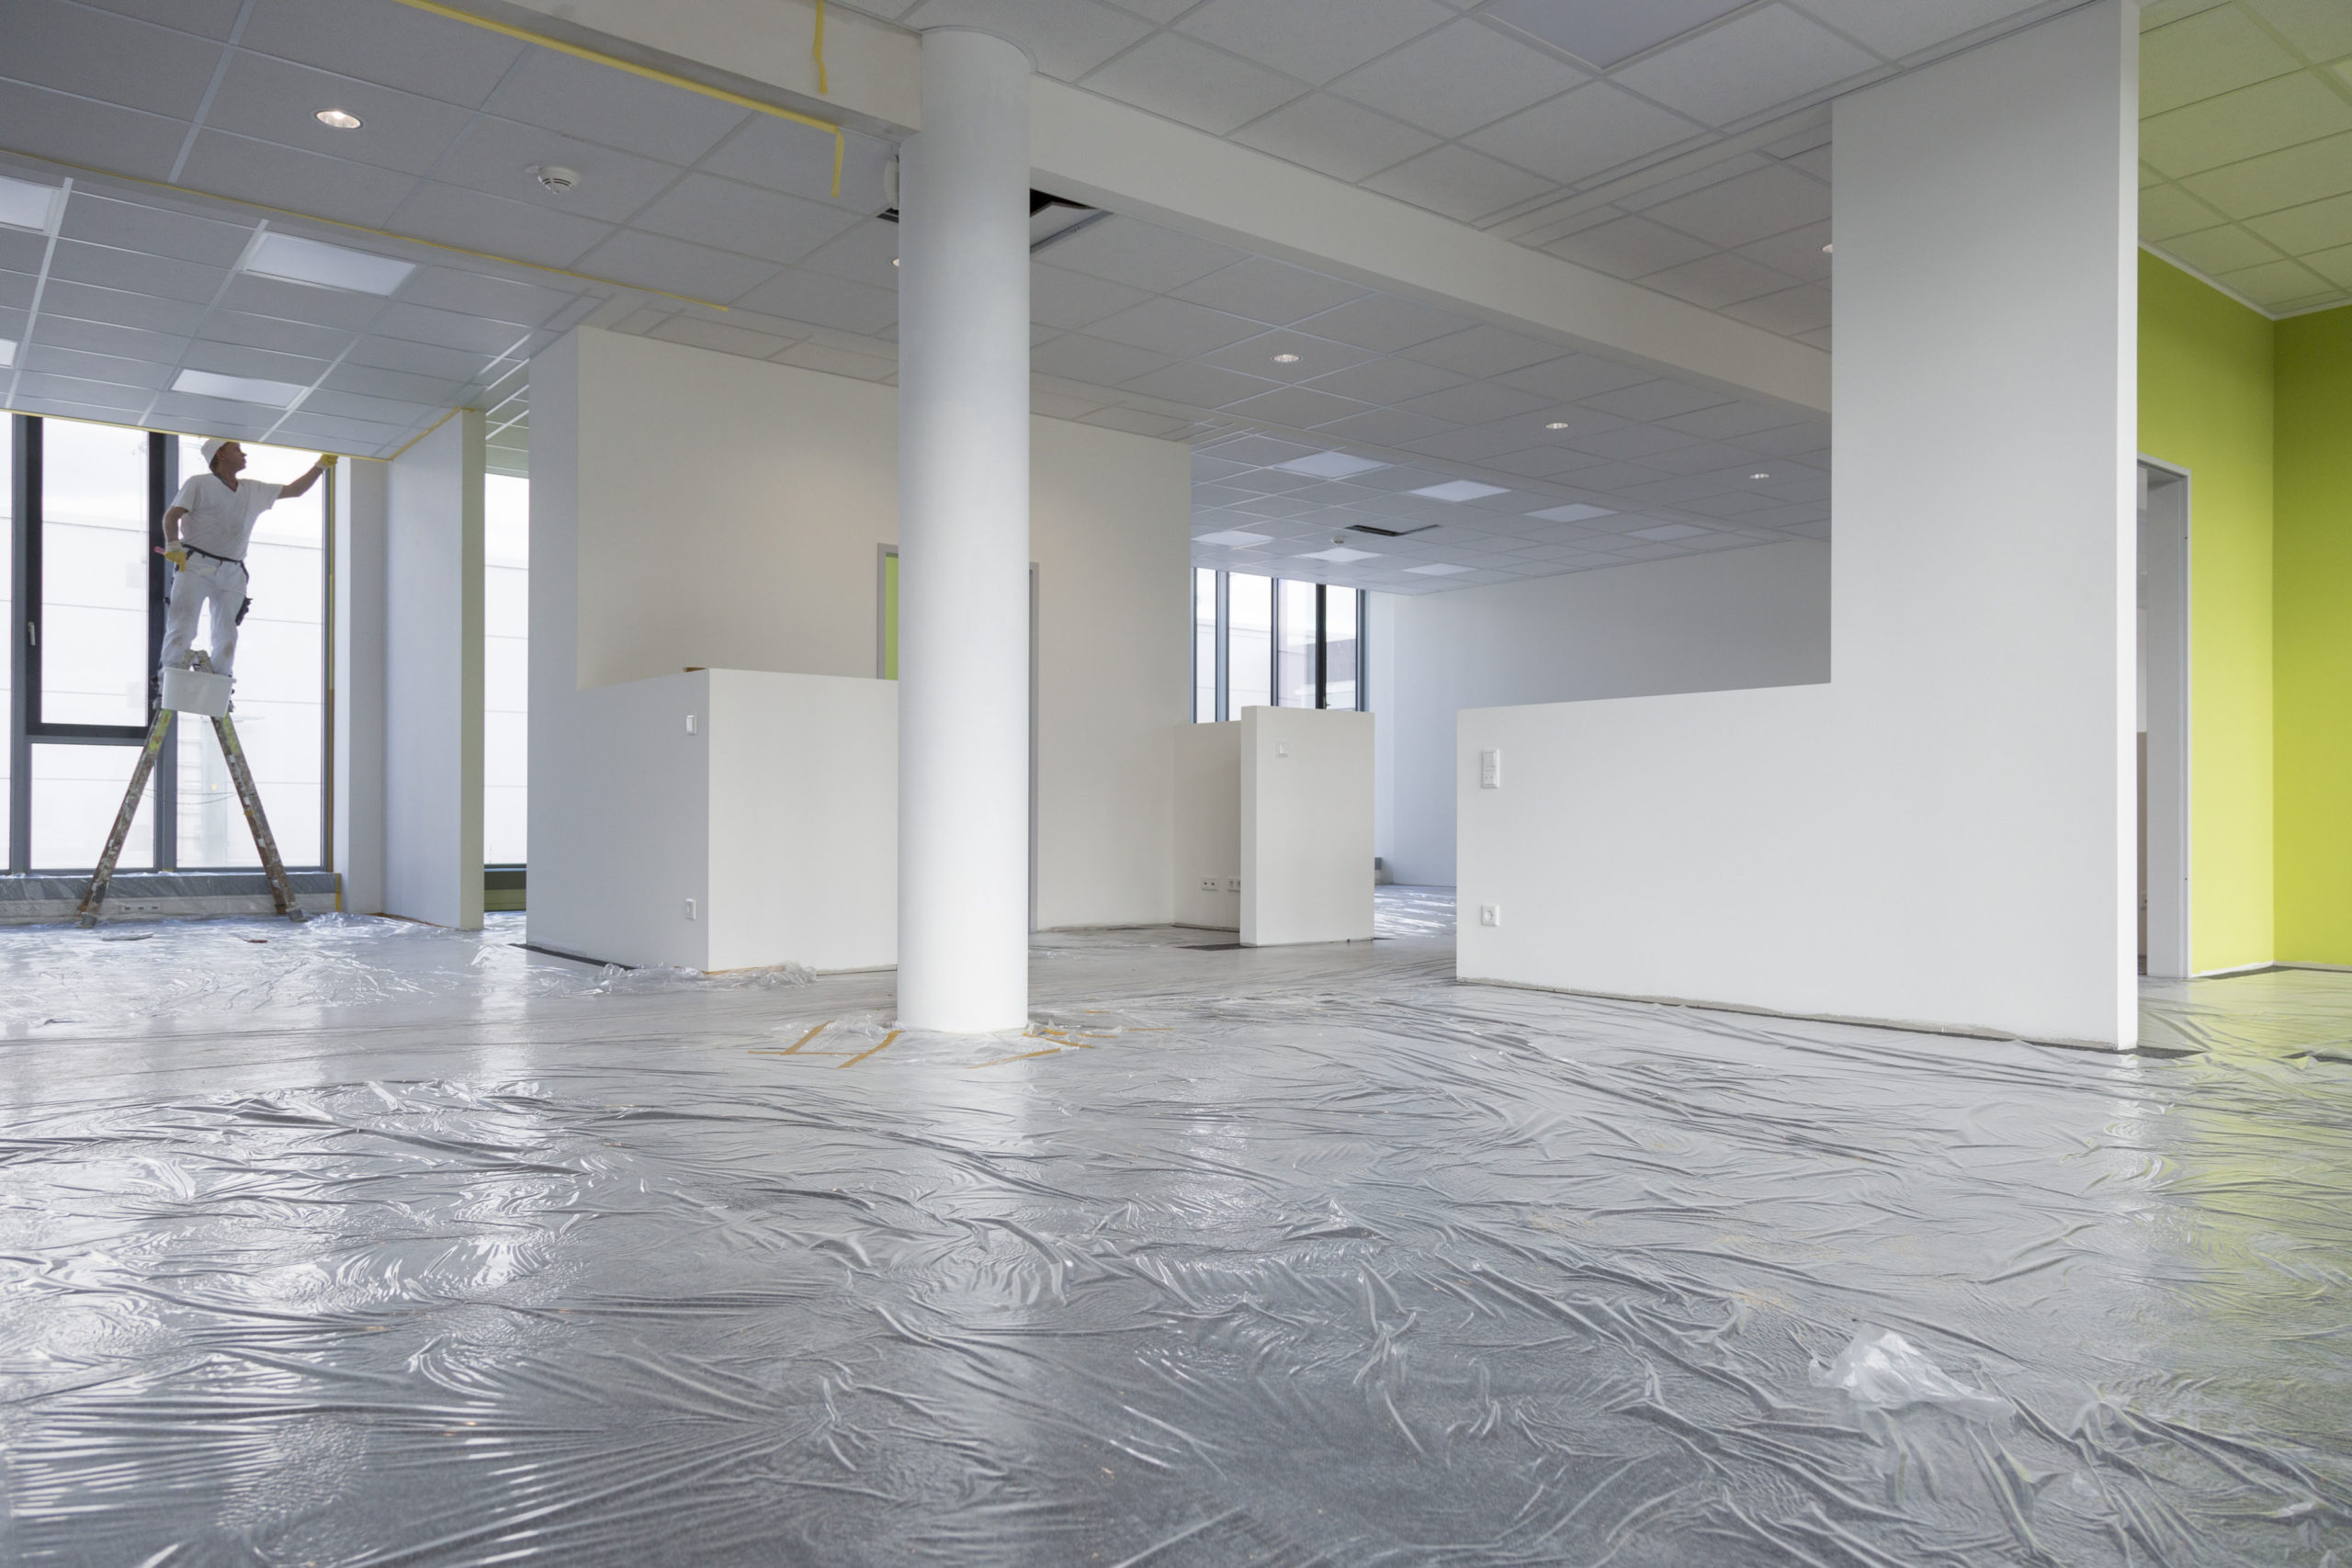 Innenbereich des Bürogebäudes bei den Malerarbeiten, der Fußboden ist. noch mit Folie bedeckt. Links im Hintergrund arbeitet ein Maler an der Wand.